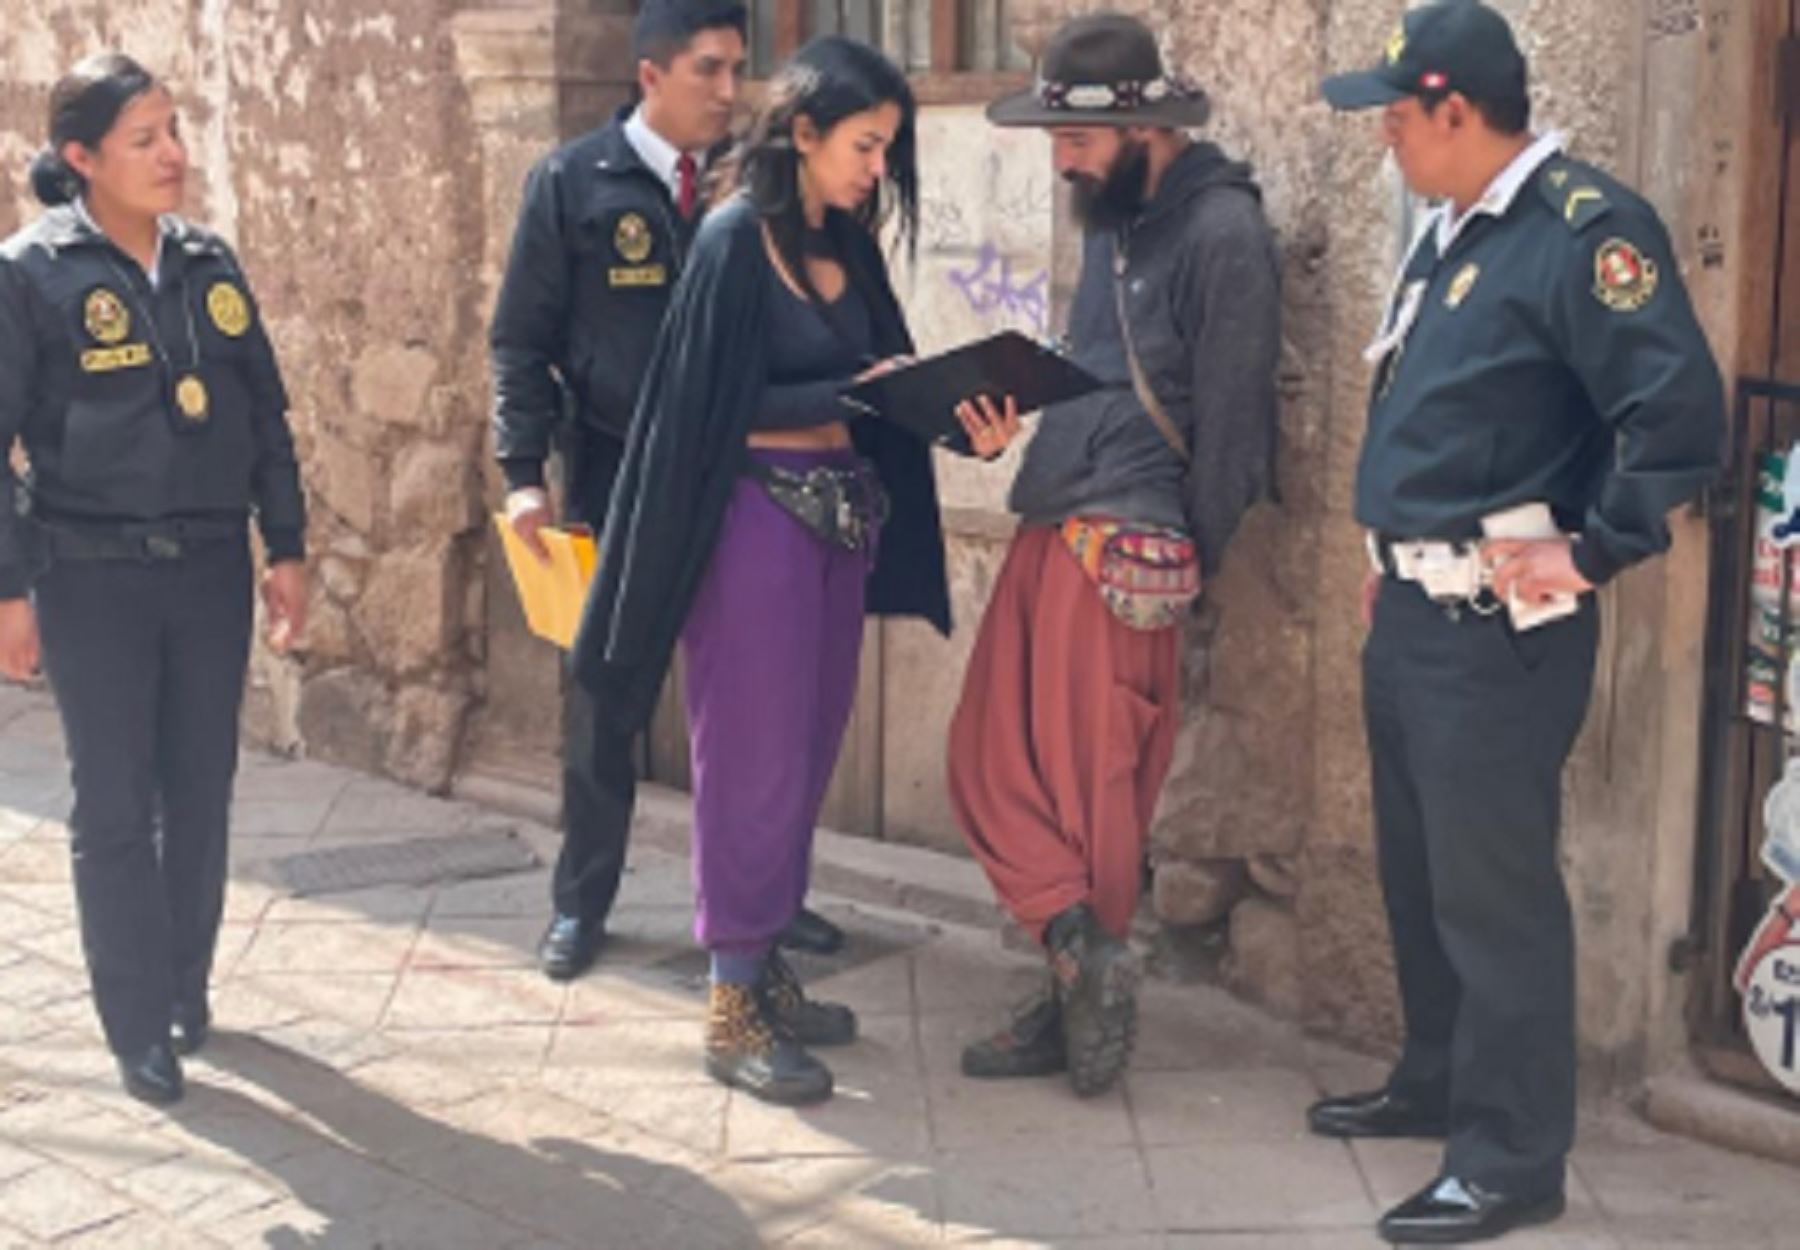 Agentes de la Región Policial Cusco encontraron sanos y salvos a dos turistas extranjeros reportados extraviados desde el 11 de marzo, tras visitar la montaña Pachatusan, ubicada en el distrito de San Salvador, en la provincia cusqueña de Calca.